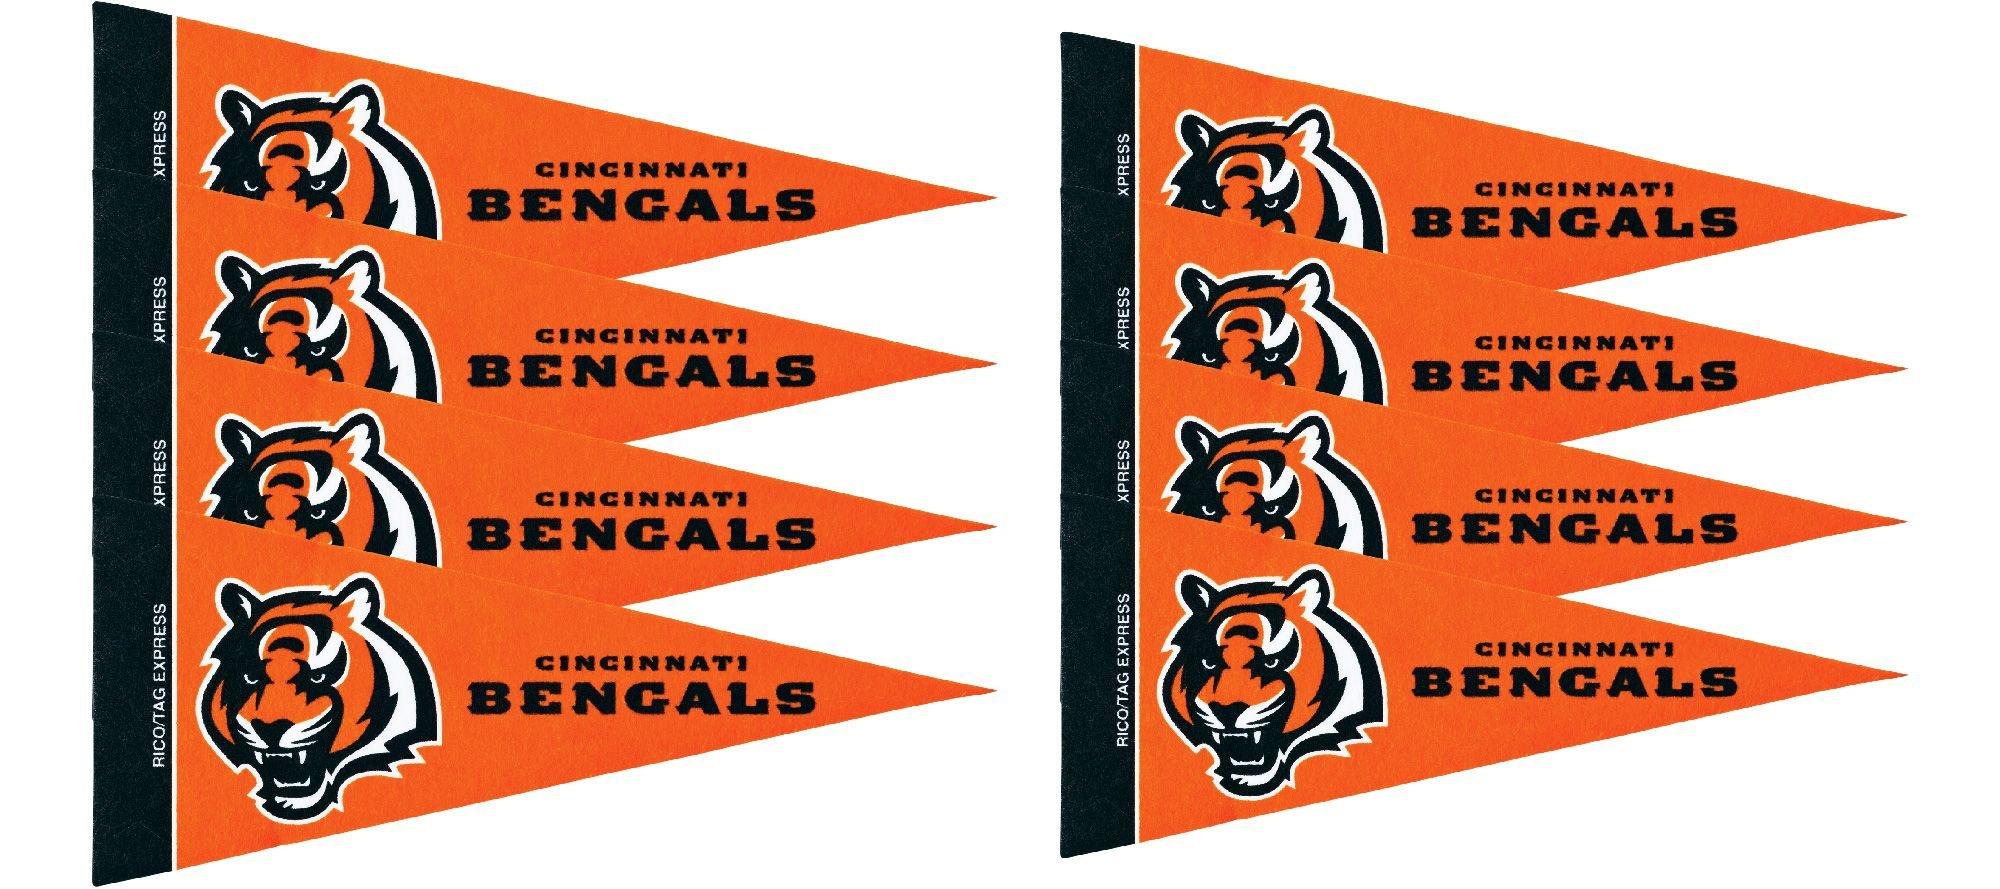 Cincinnati Bengals Pennants 8ct